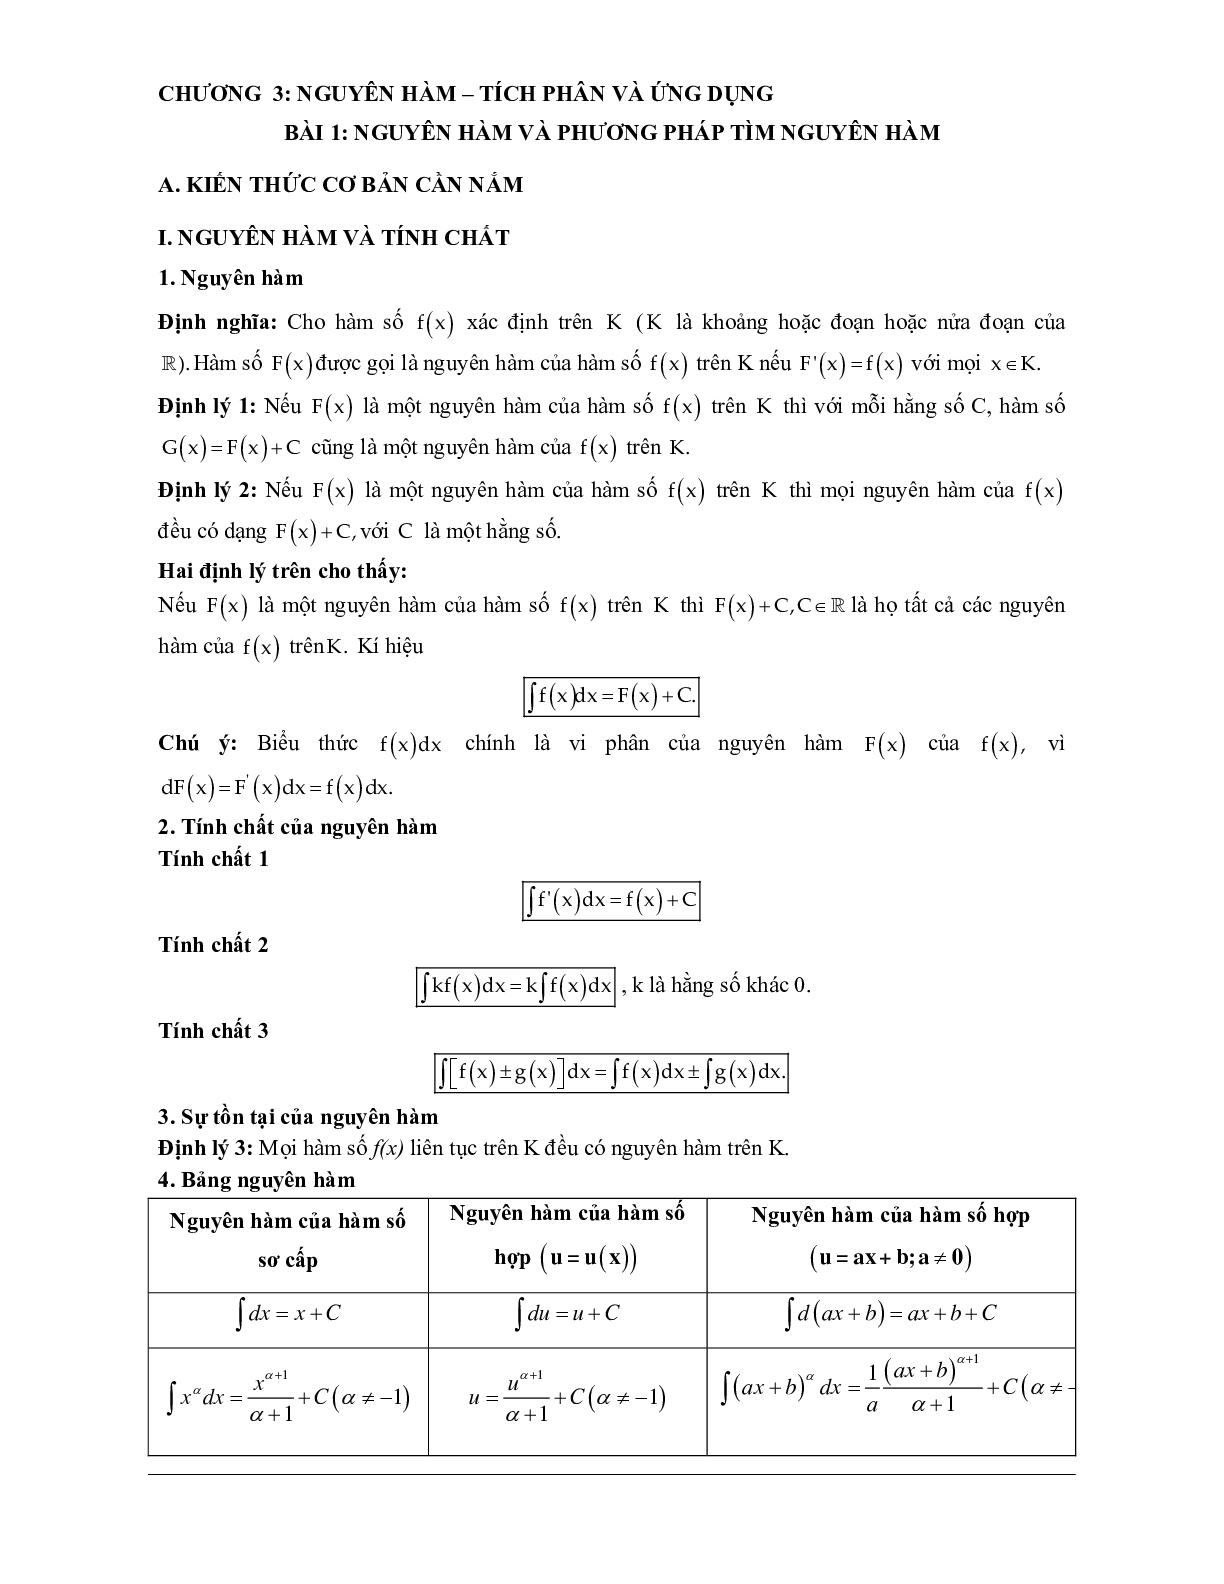 Các dạng bài tập về VDC nguyên hàm, tích phân và ứng dụng (trang 1)